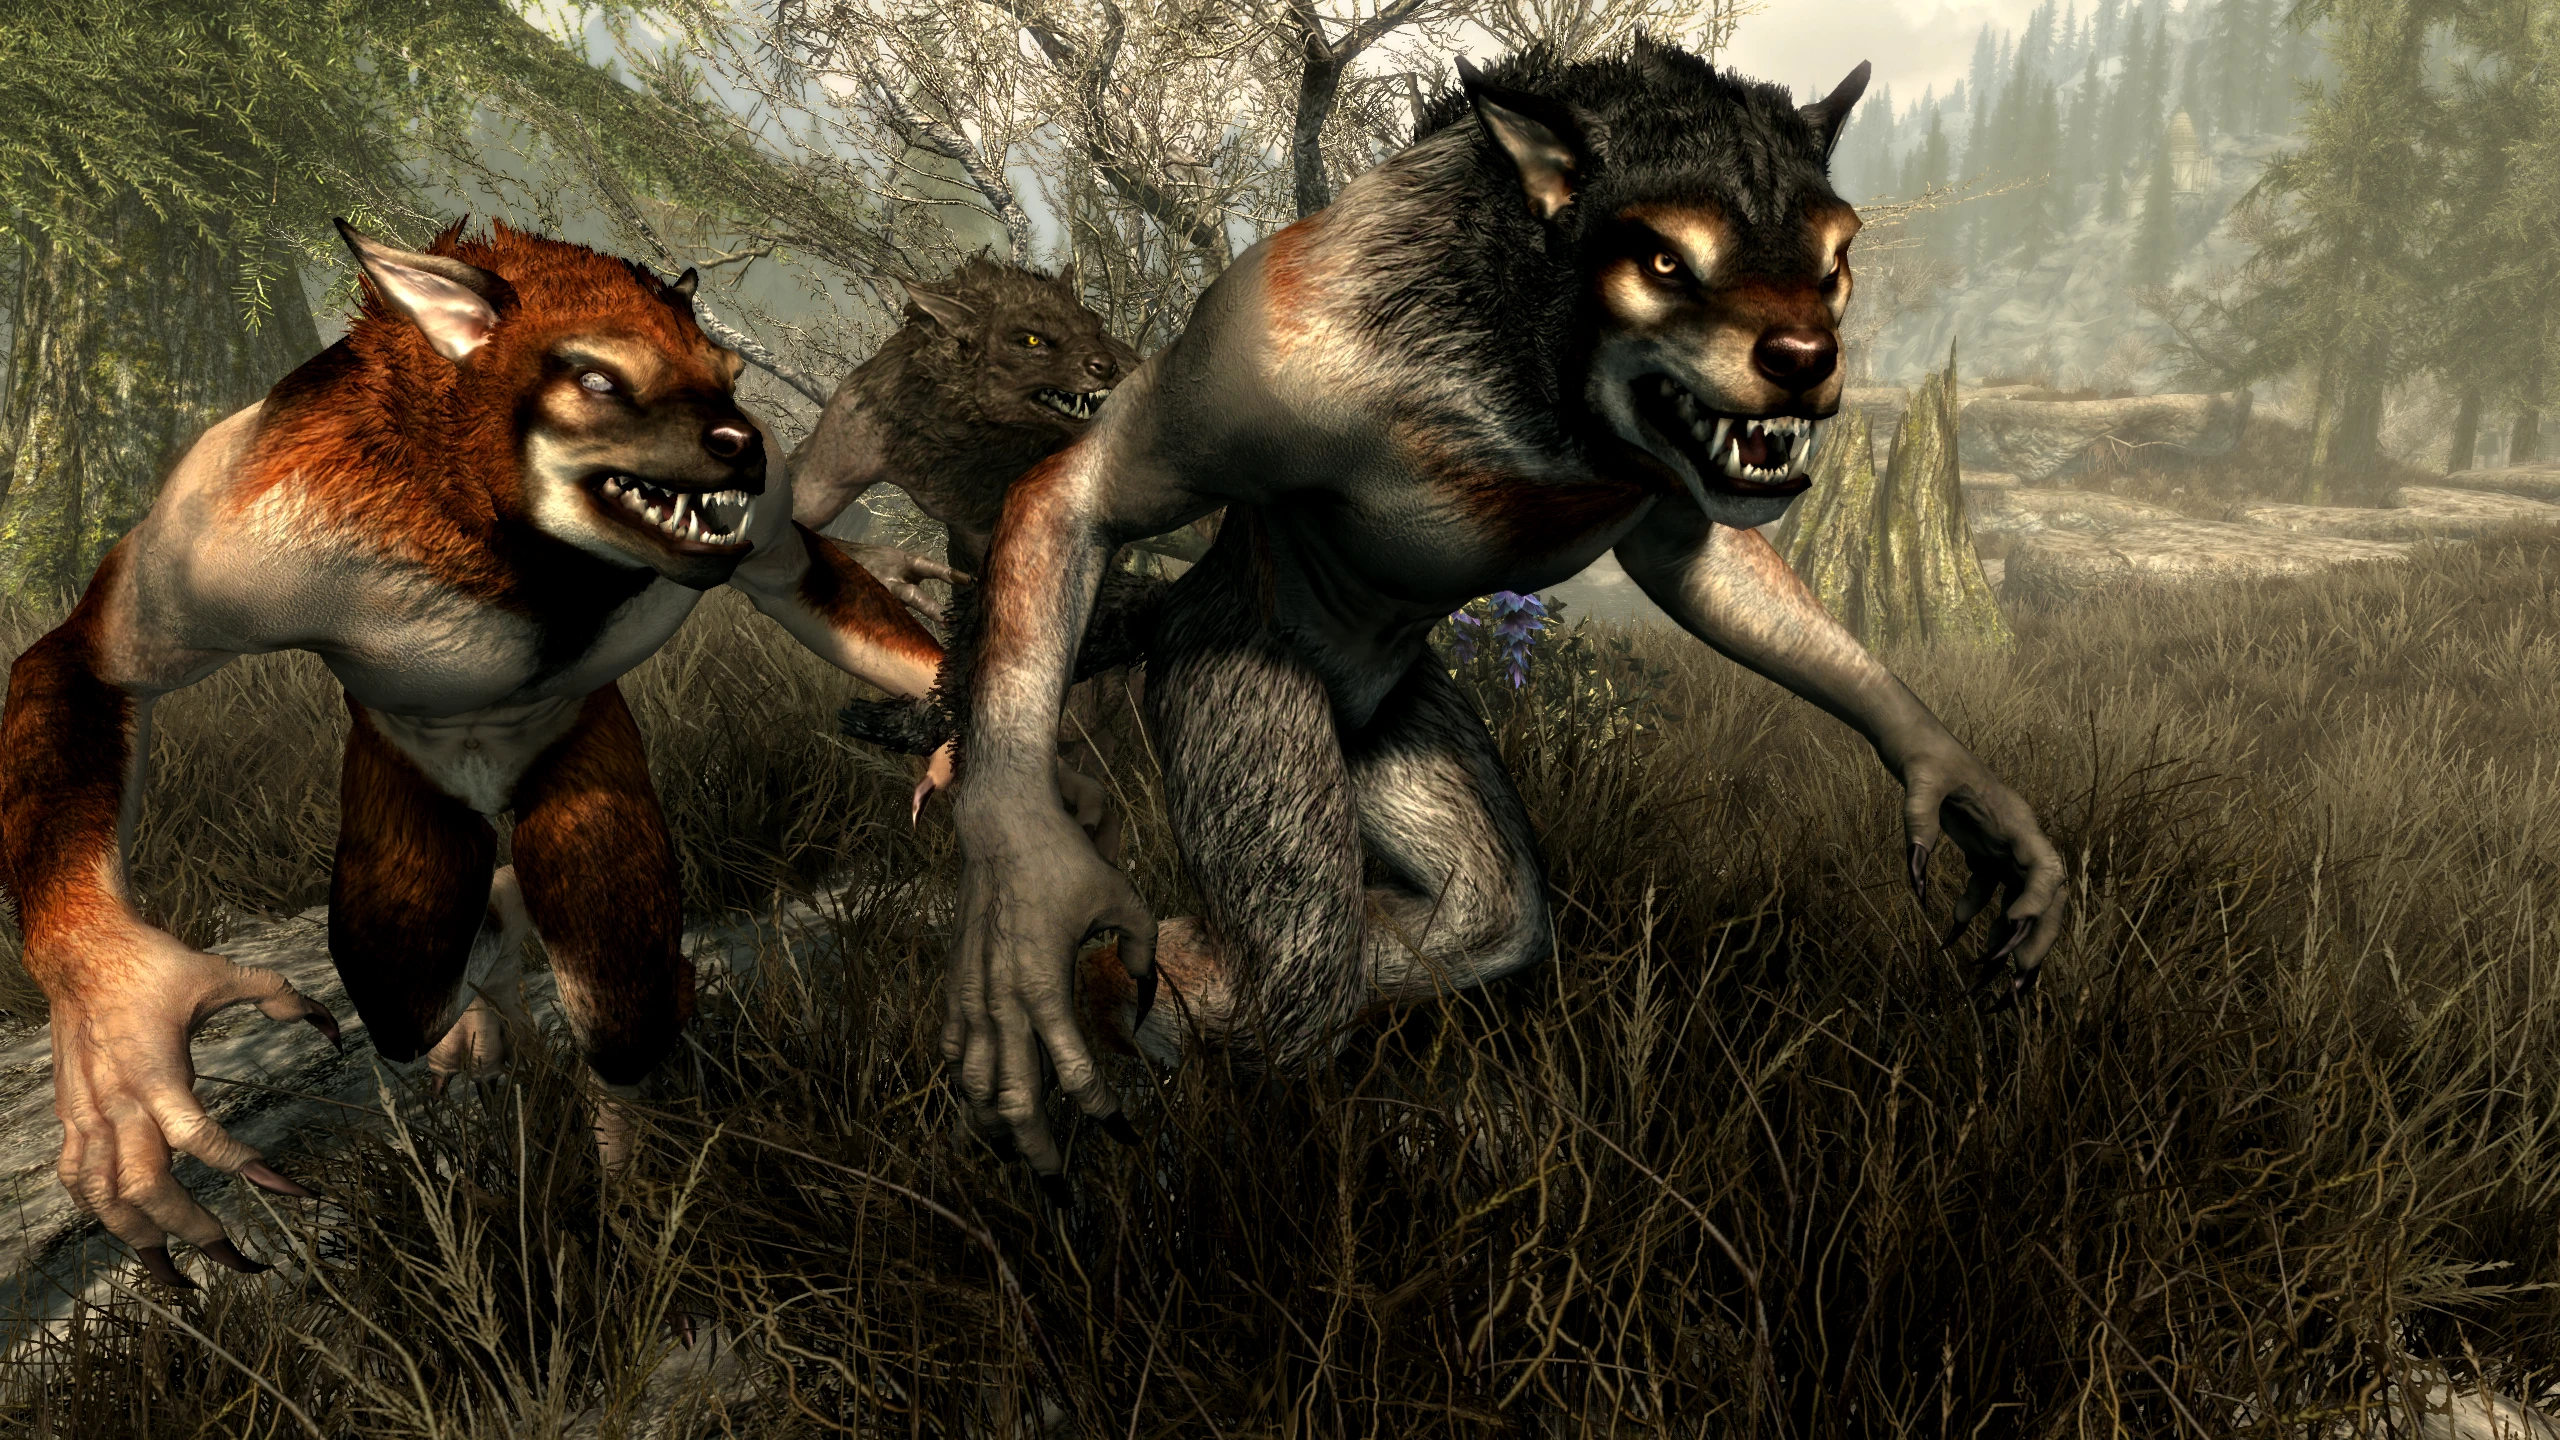 skyrim special edition werewolf mods